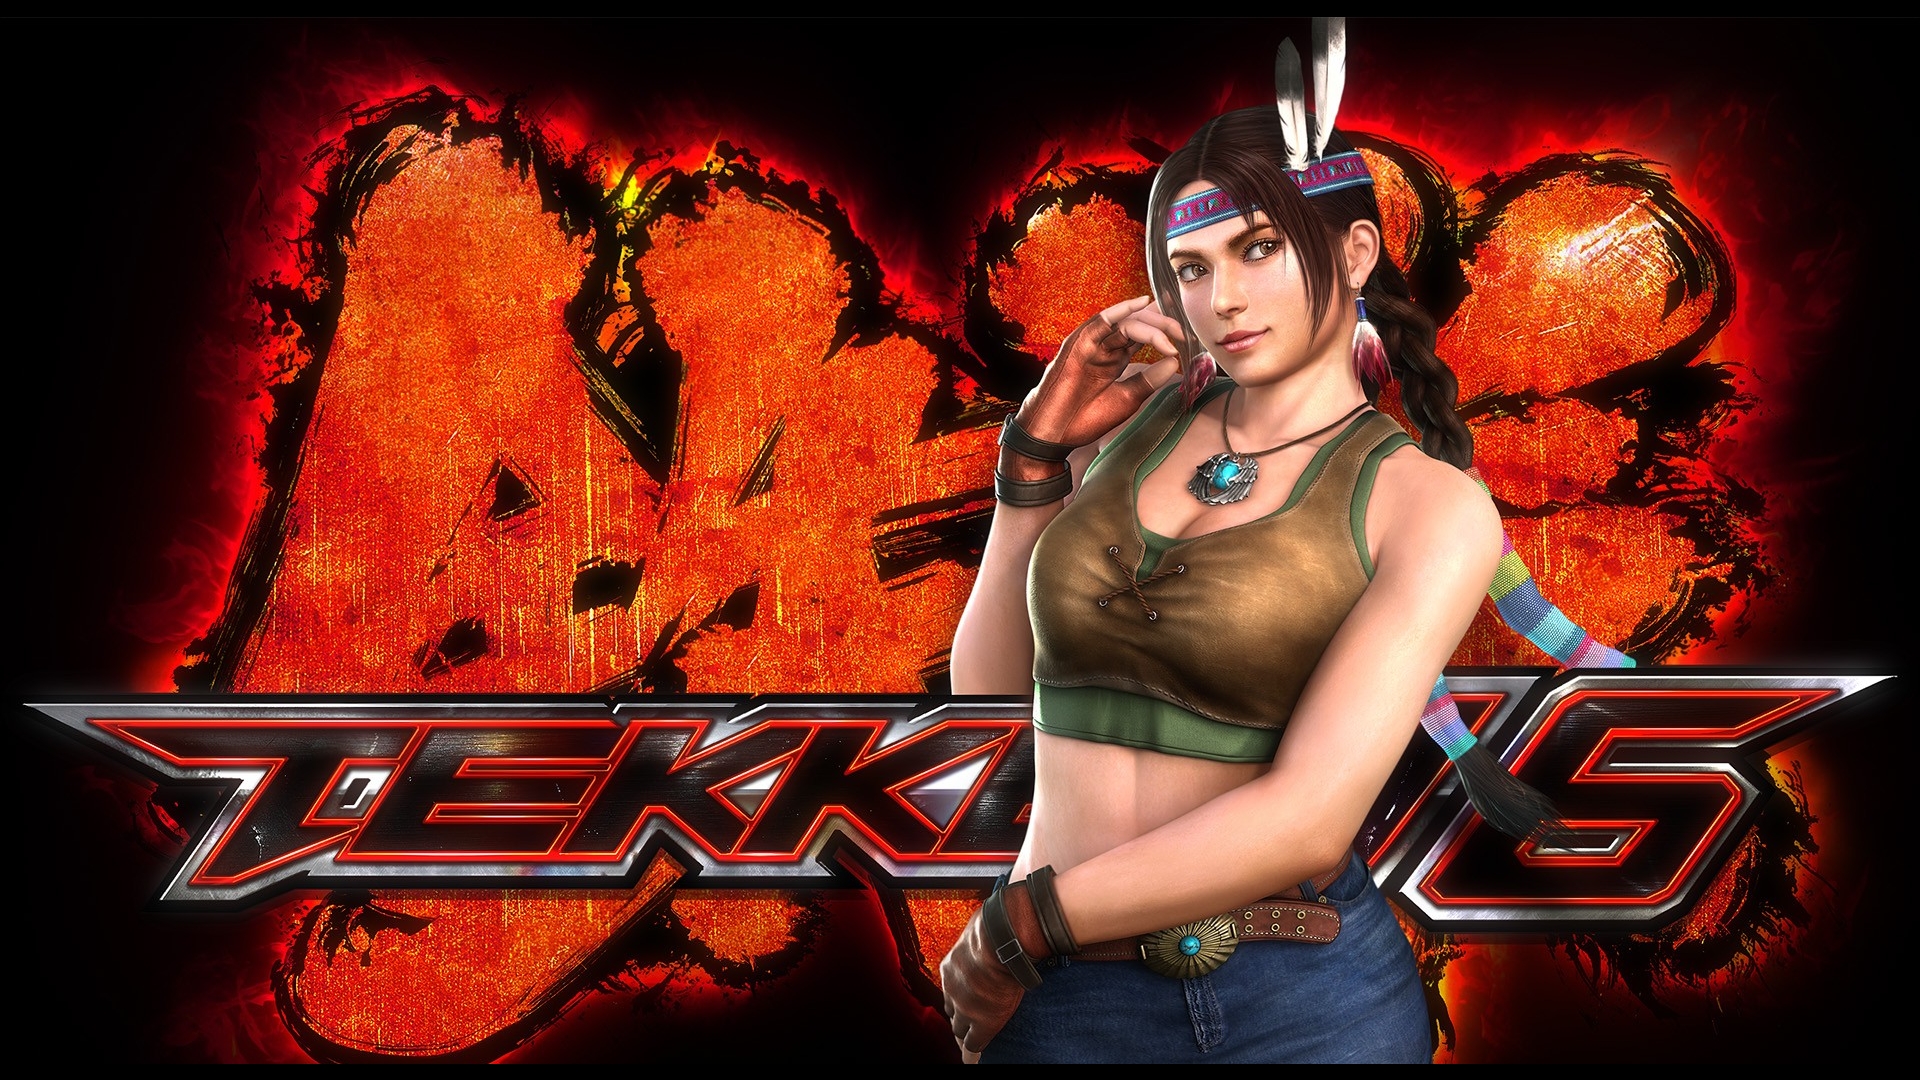 Free download wallpaper Tekken, Video Game, Tekken 6 on your PC desktop